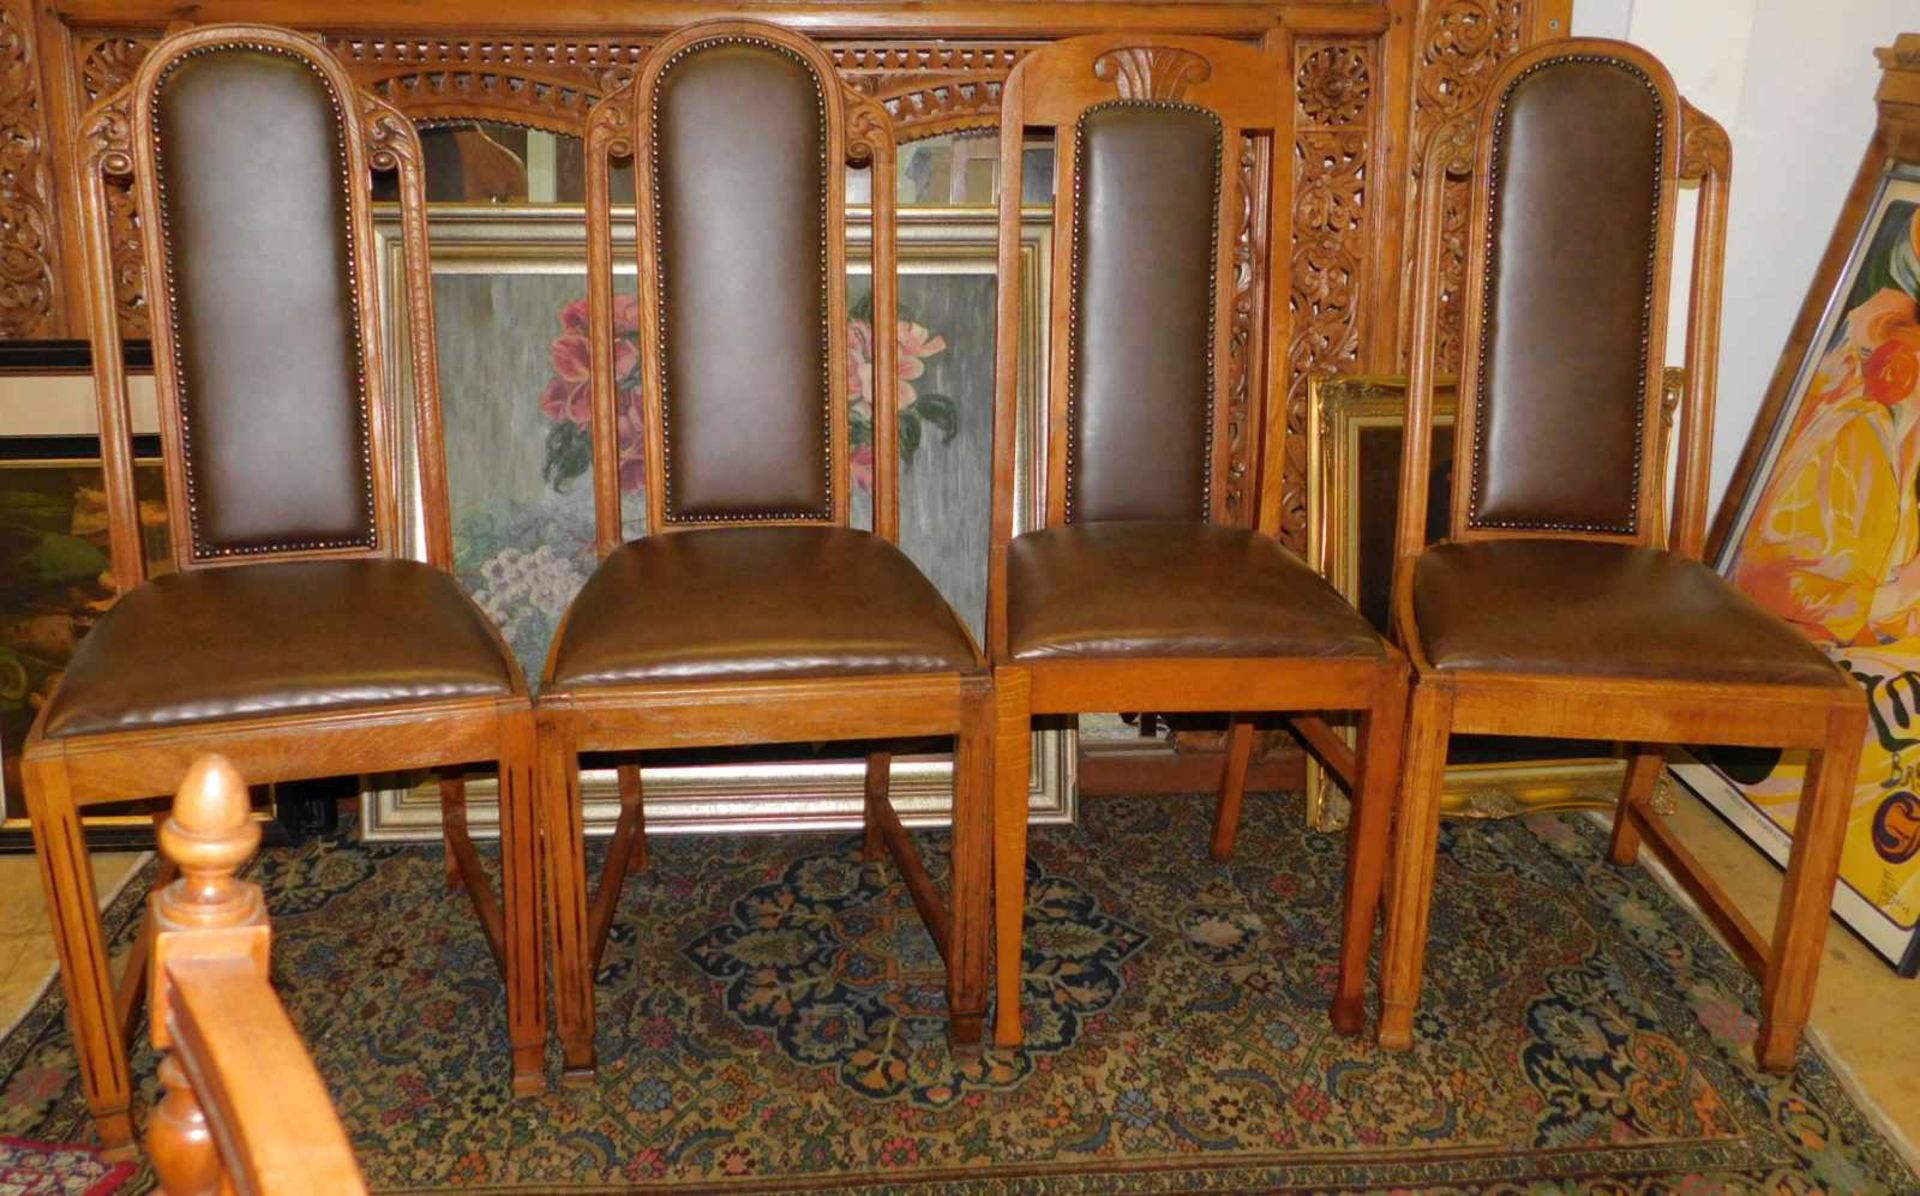 4 Stühle, Eiche, Jugendstil um 1910, Lehne verziert, Polsterung fast neuwertig, 1 Stuhl nicht - Bild 2 aus 4